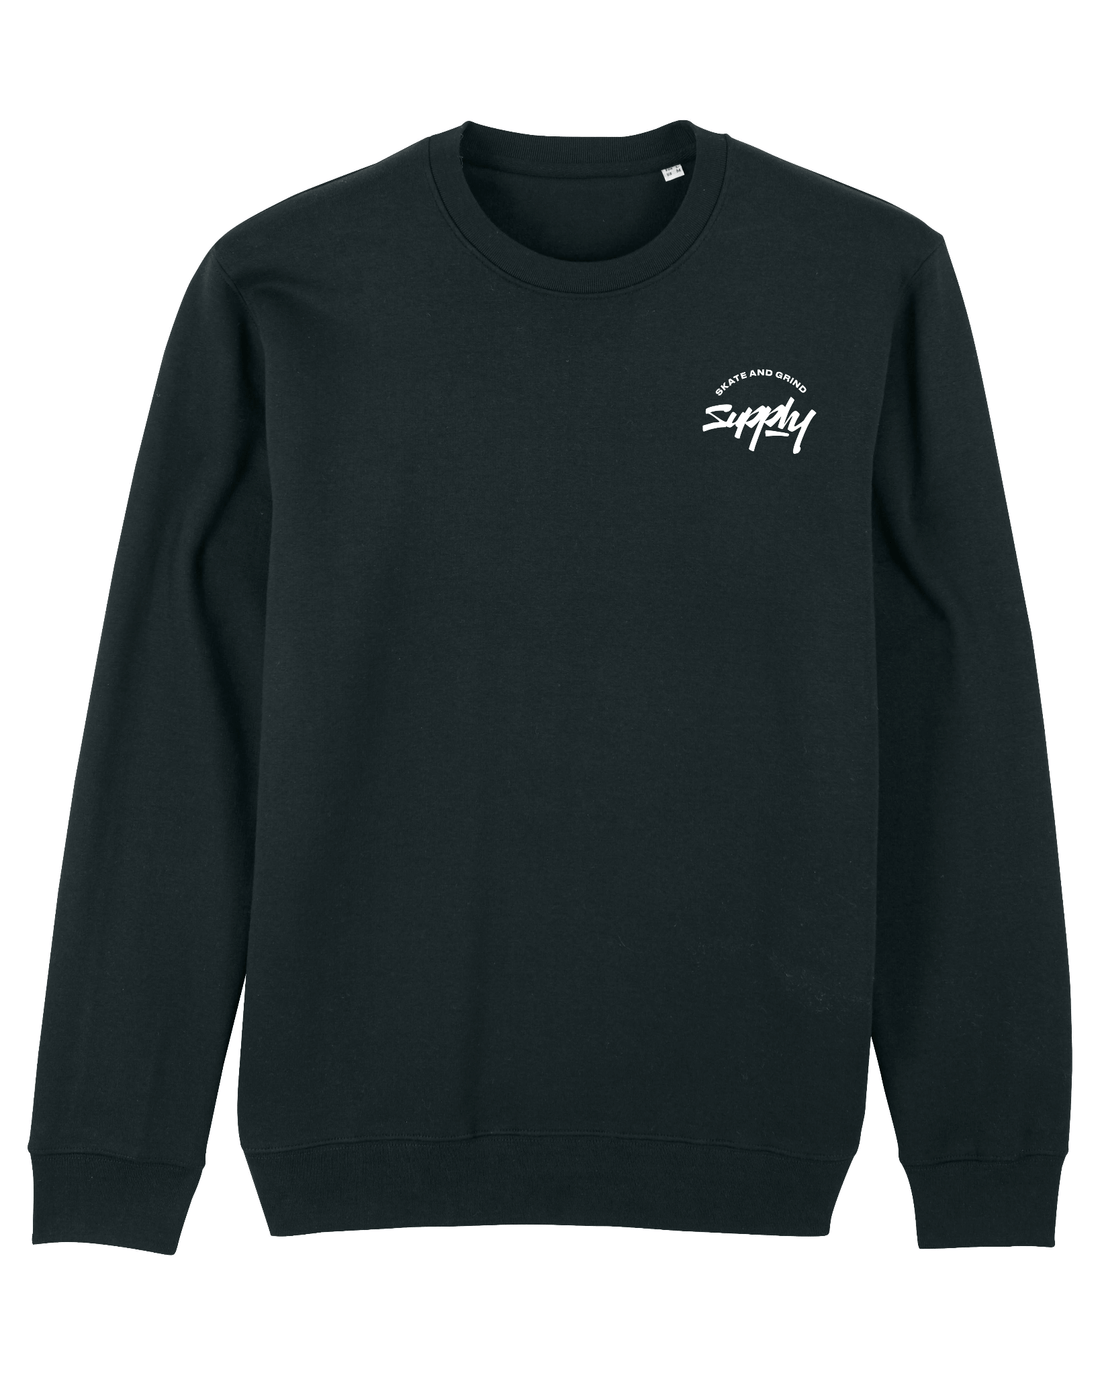 Black Skater Sweatshirt, Skate & Grind Front Print